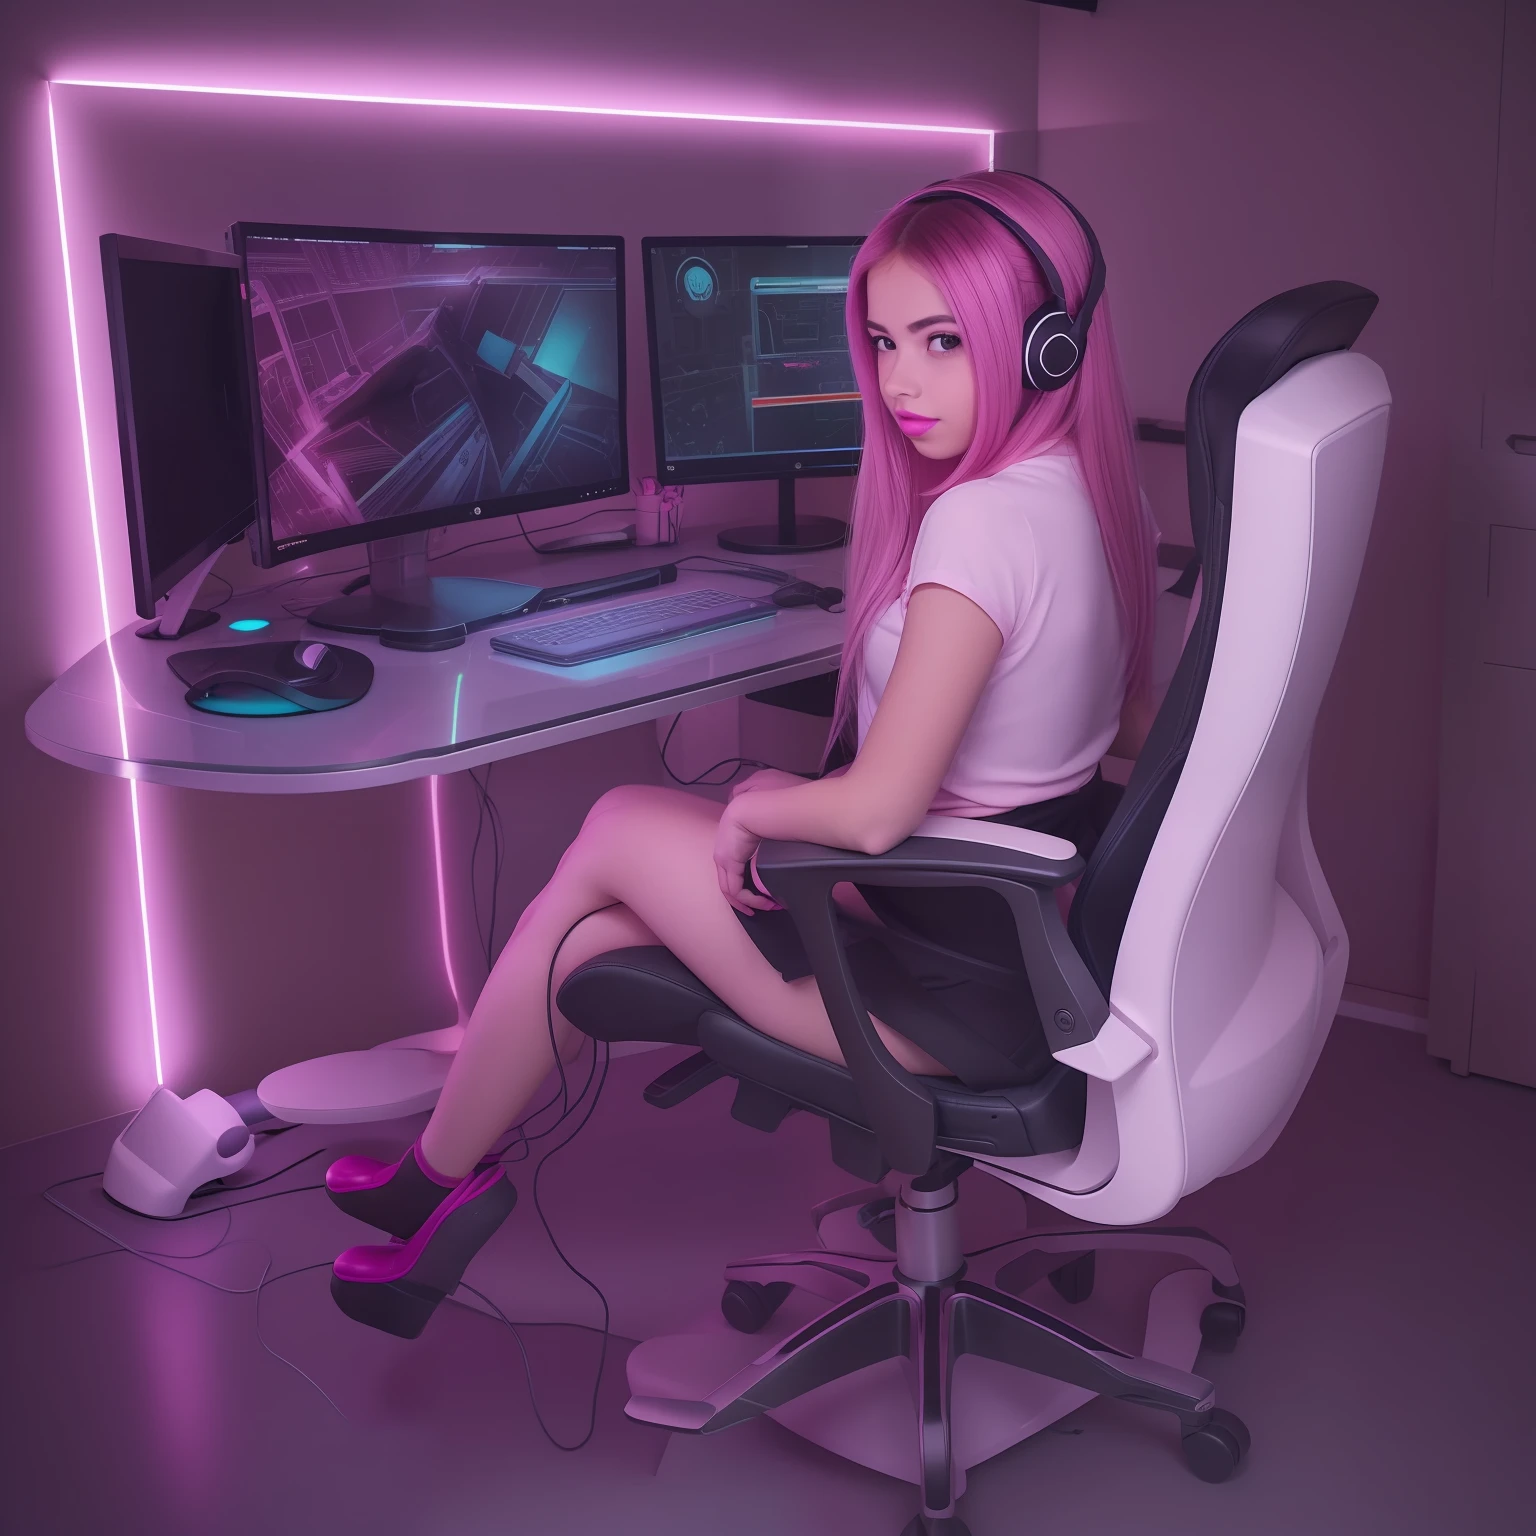 1 名女孩, 坐姿, 辦公椅, 電腦, LED RGB, 四開遊戲玩家, 自己拍的照片, 棕色的頭髮, 沙漏型身材, , 丁字褲內褲, 透明的, 粉紅色的嘴唇, 紅撲的臉, 後面的位置, 全身視覺